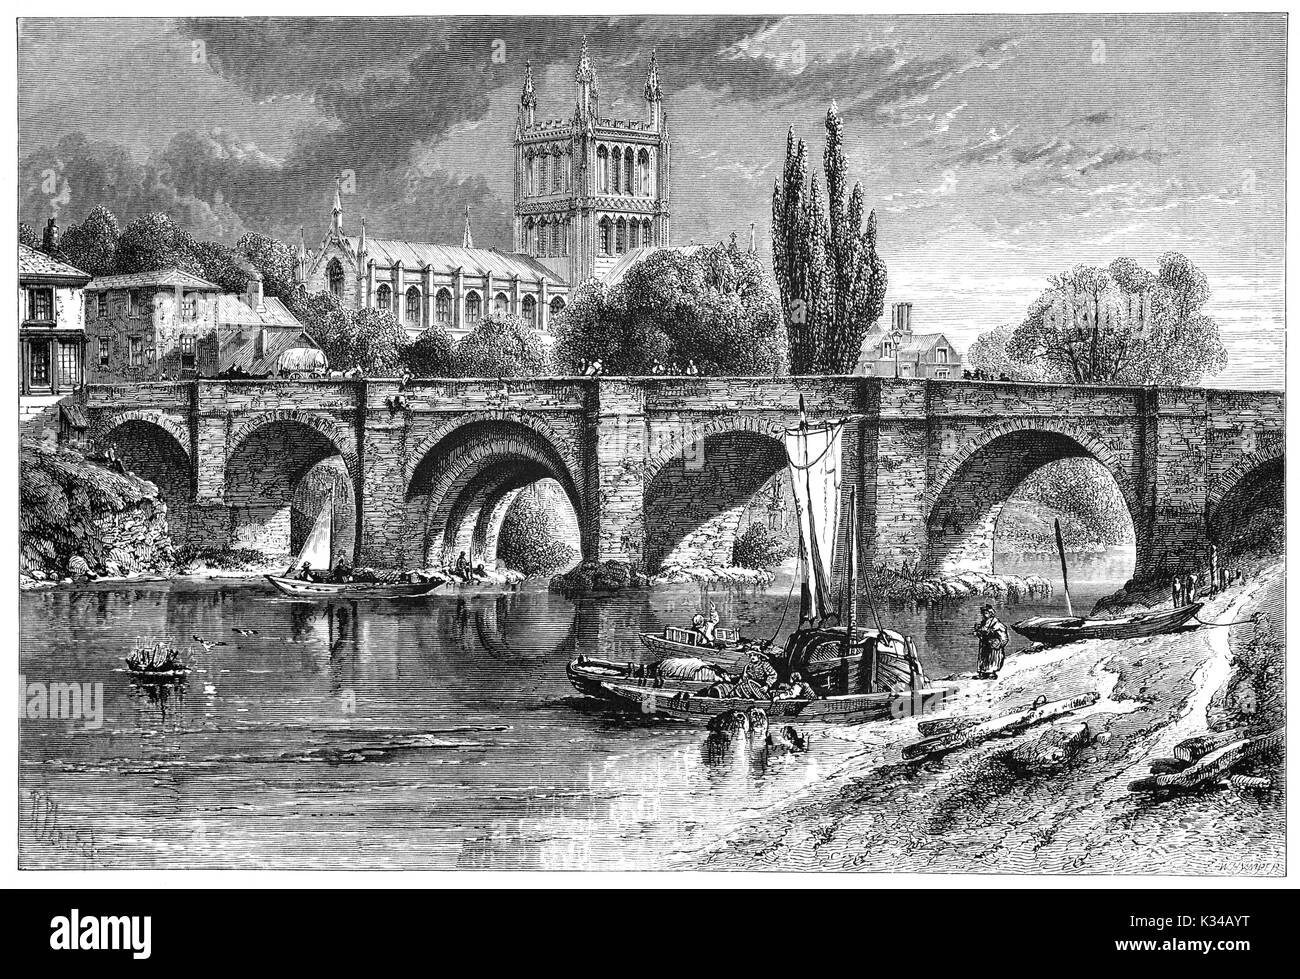 1870 : les activités de rivière sur la rivière Wye en dessous du pont Wye Cathédrale avec au-delà. Il date de 1079 et son plus célèbre Mappa Mundi est un trésor, une carte du monde médiéval datant du 13ème siècle. Herefordshire, en Angleterre. Banque D'Images